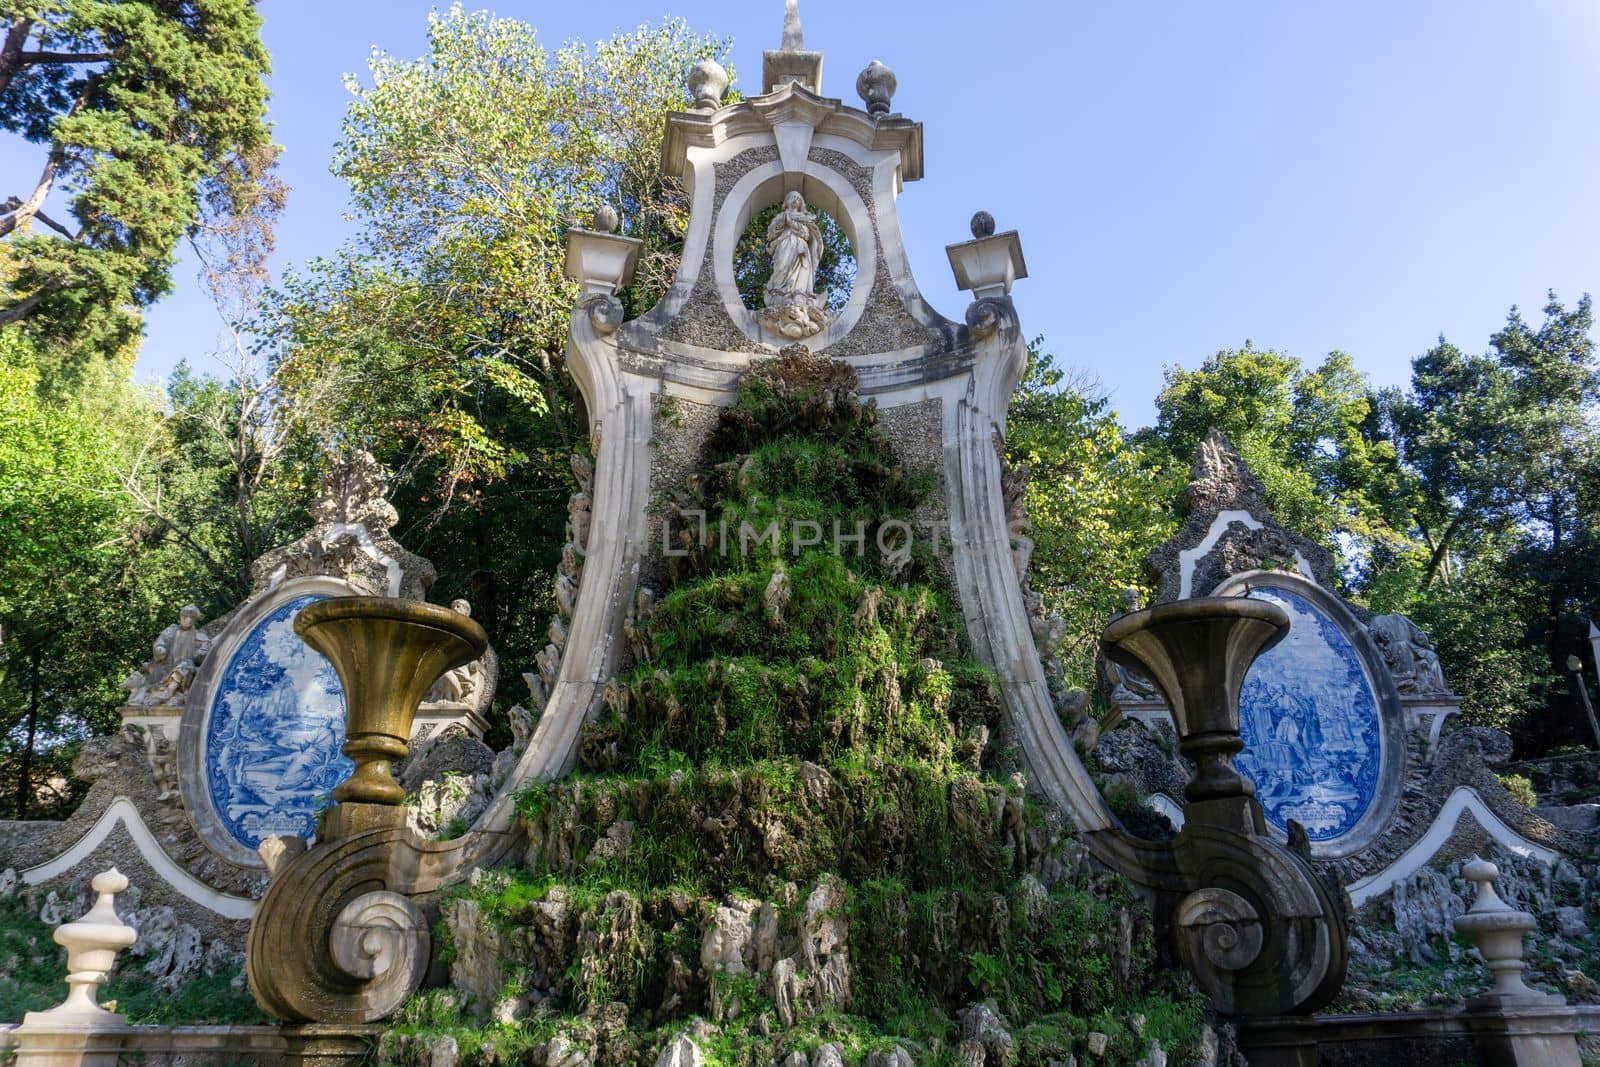 Sculptural composition at Sereia Garden, Coimbra by Challlenger